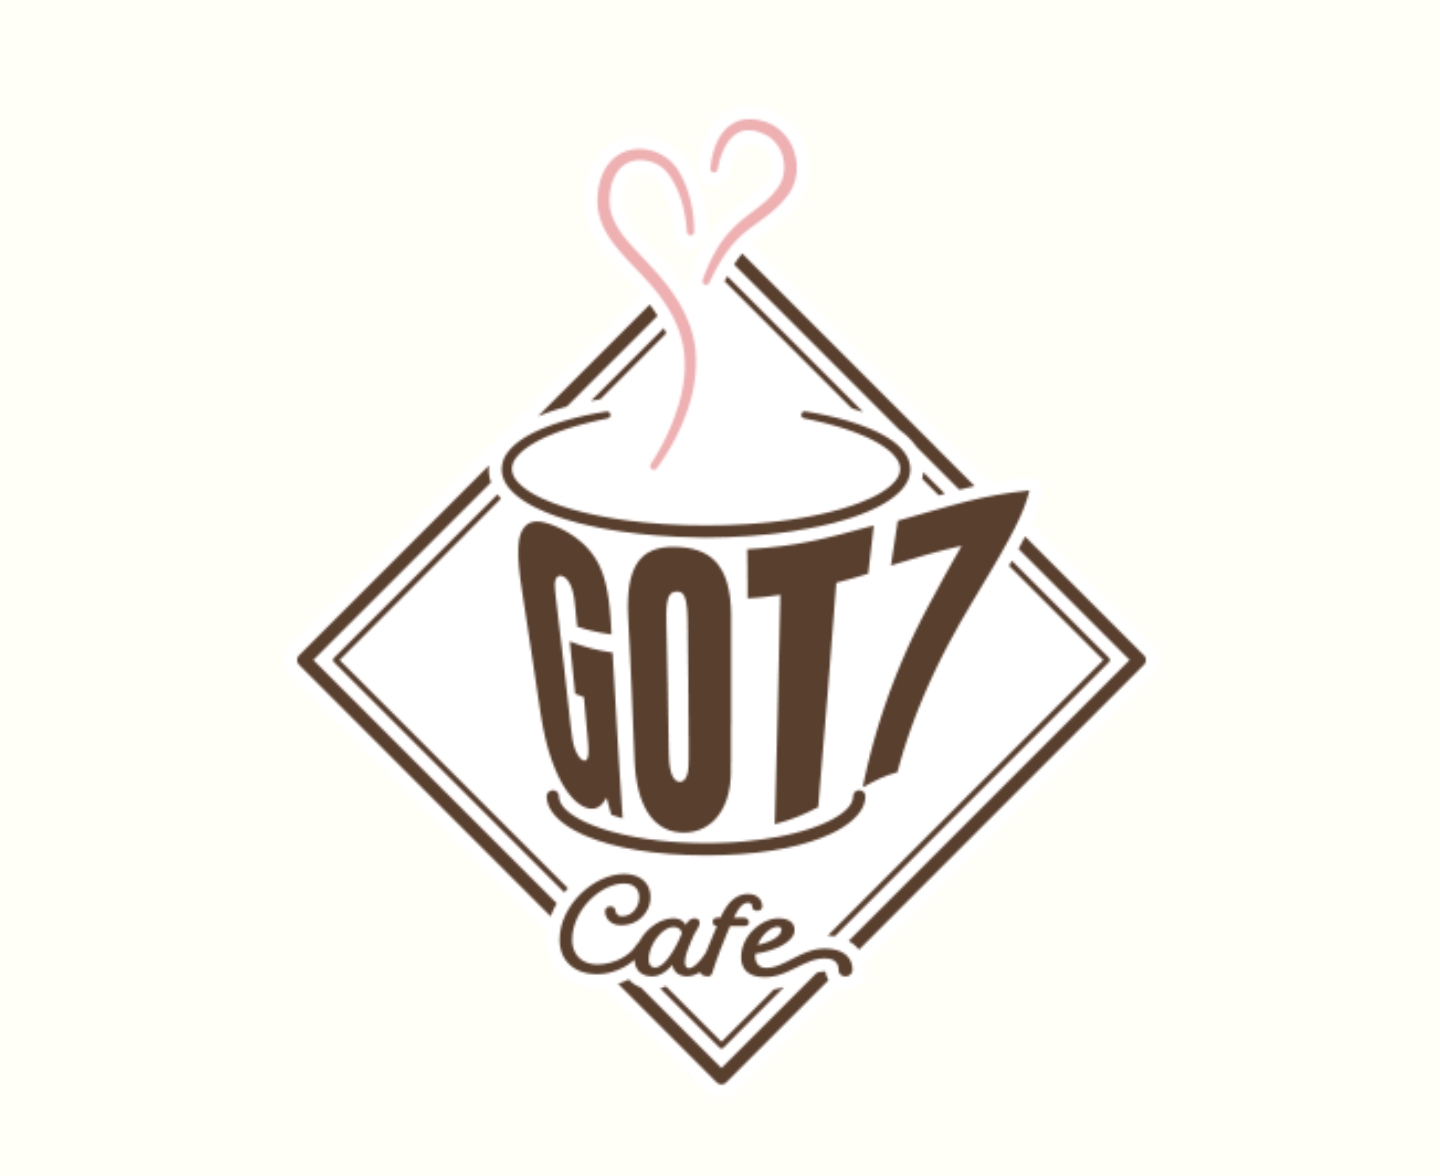 GOT7 Cafe